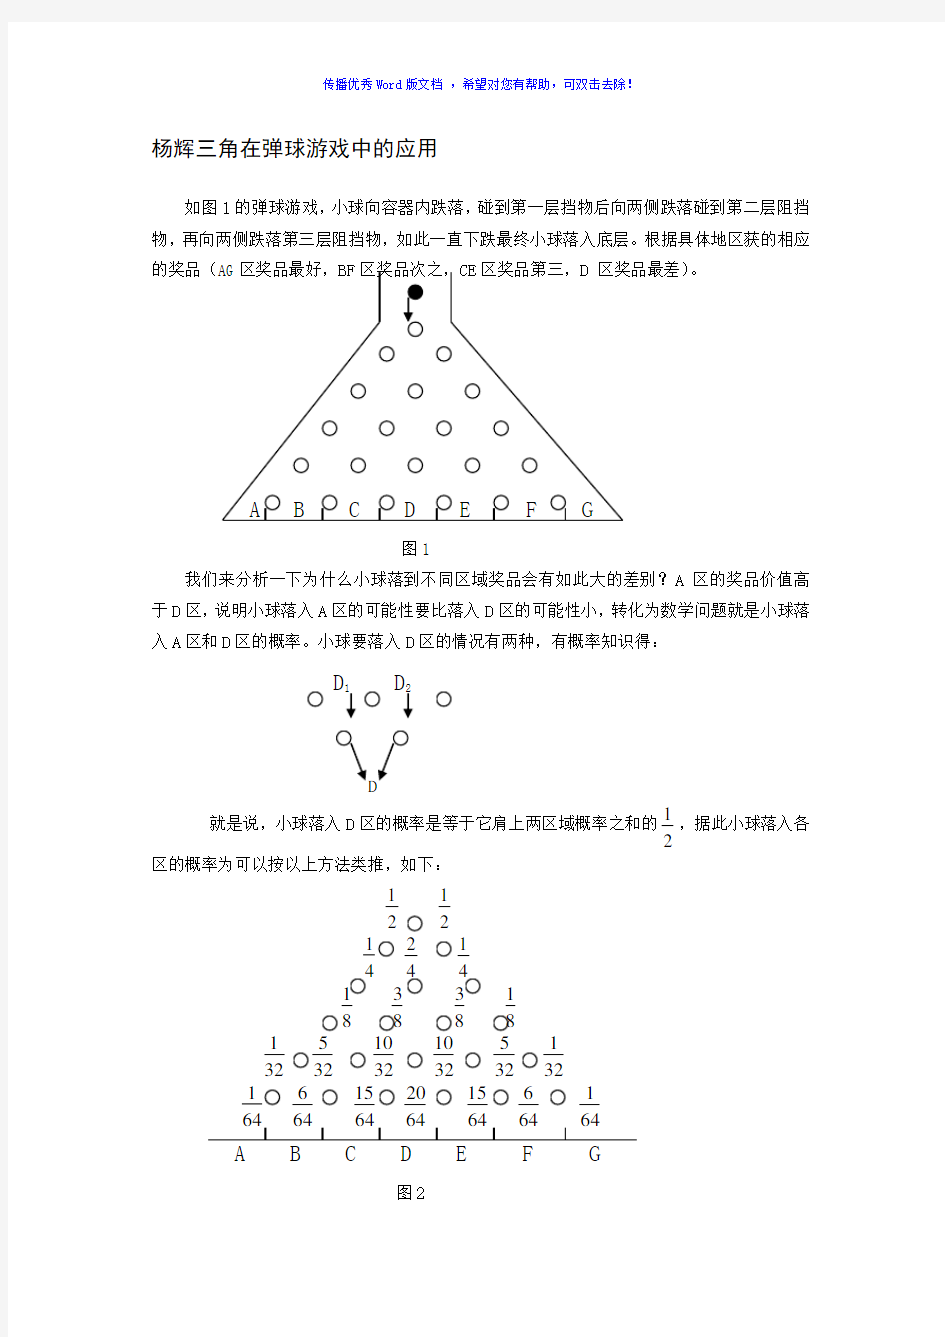 杨辉三角形的生活运用和规律Word版